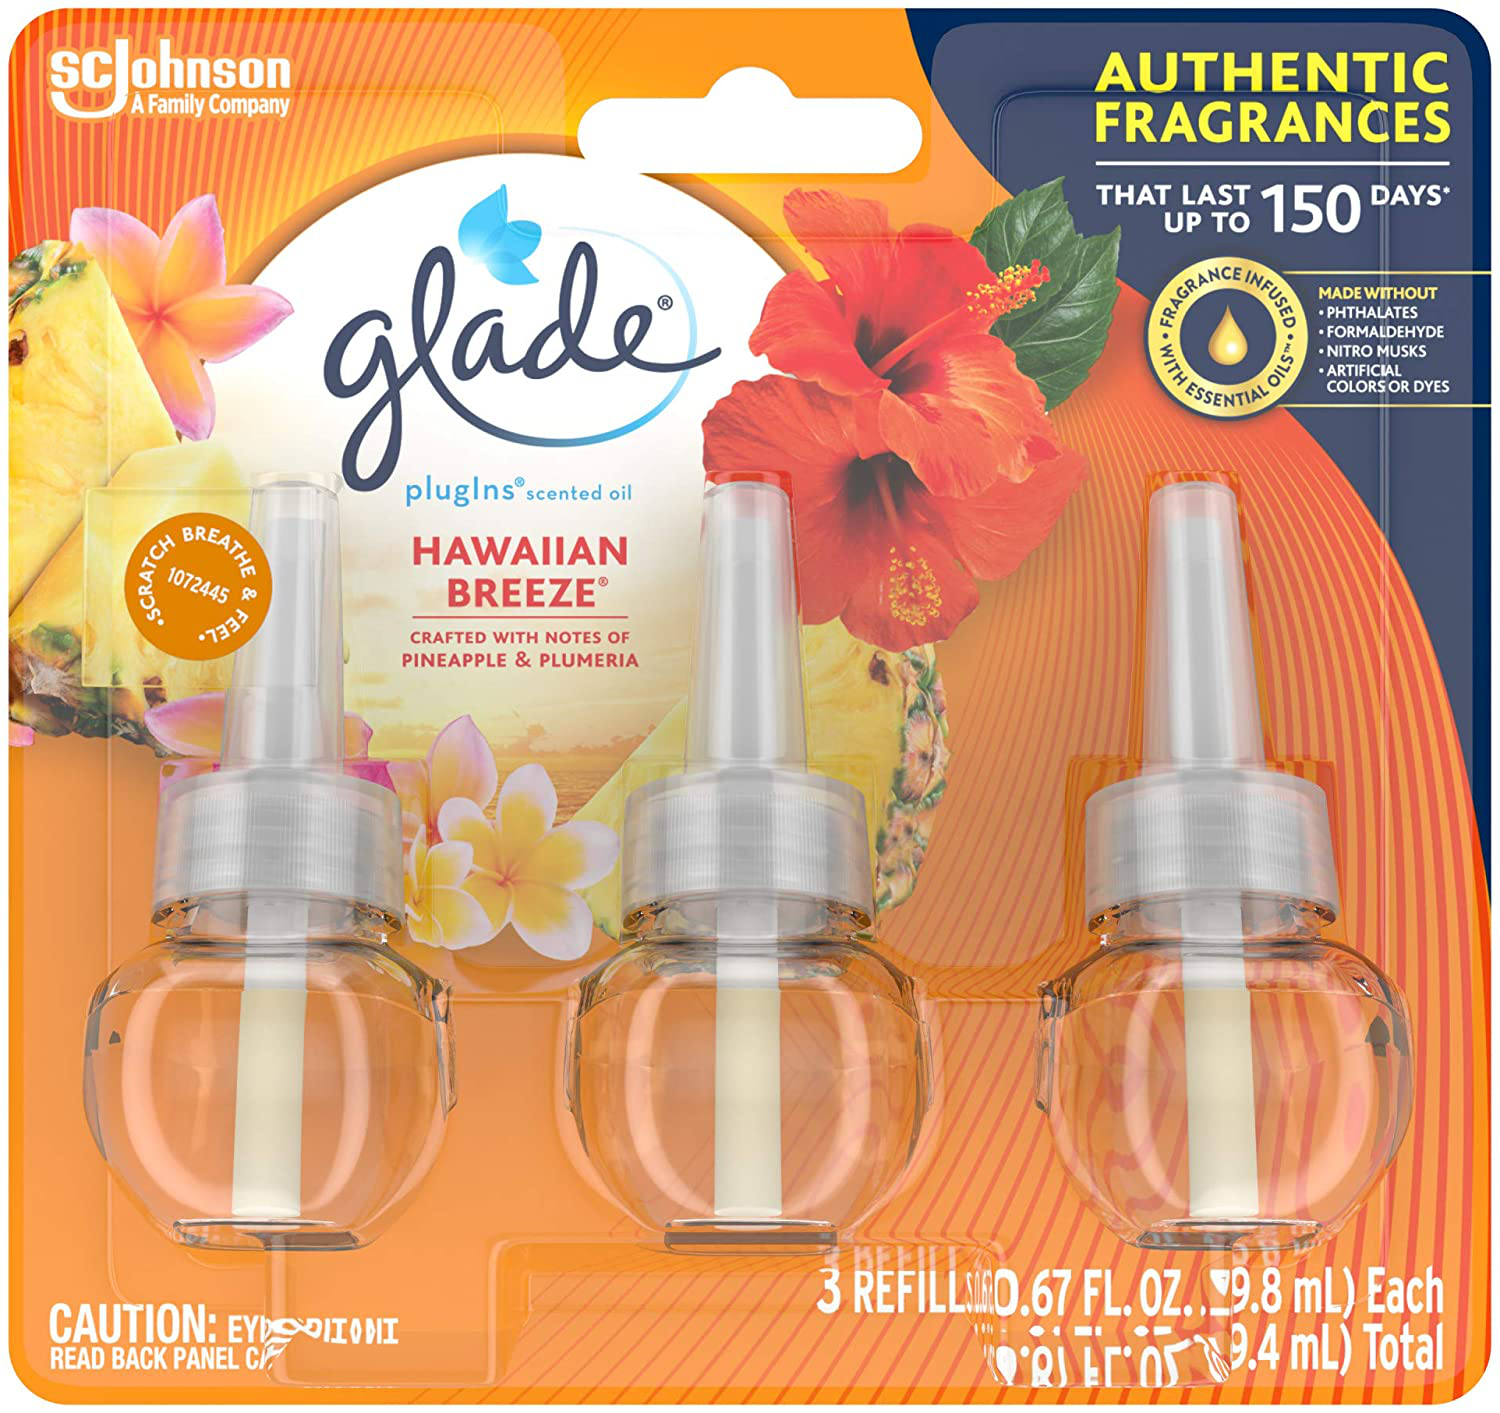 Glade PlugIn Plus Air Freshener Starter Kits or Refills